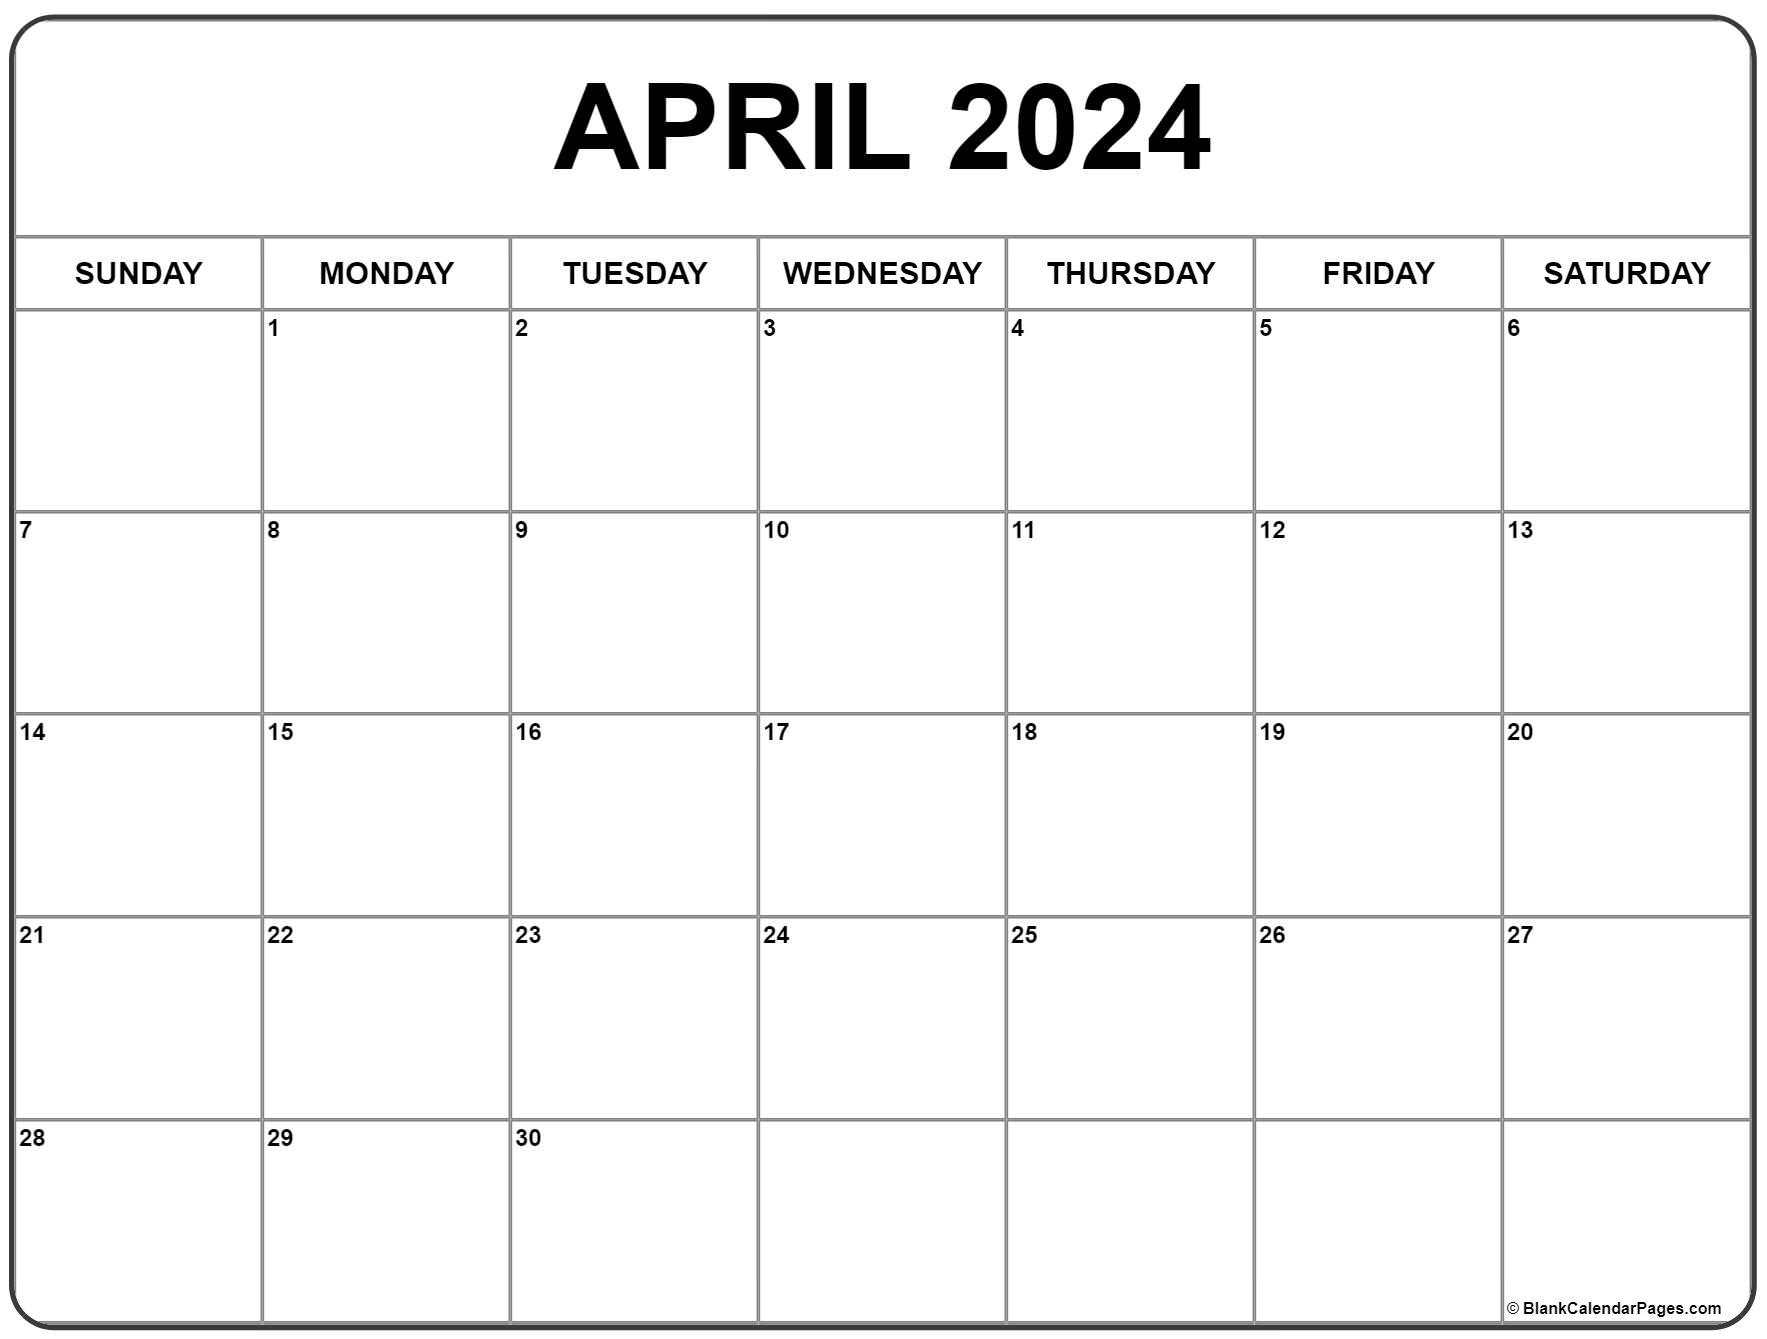 April 2024 Calendar | Free Printable Calendar for Printable Calendar April 2024 Free